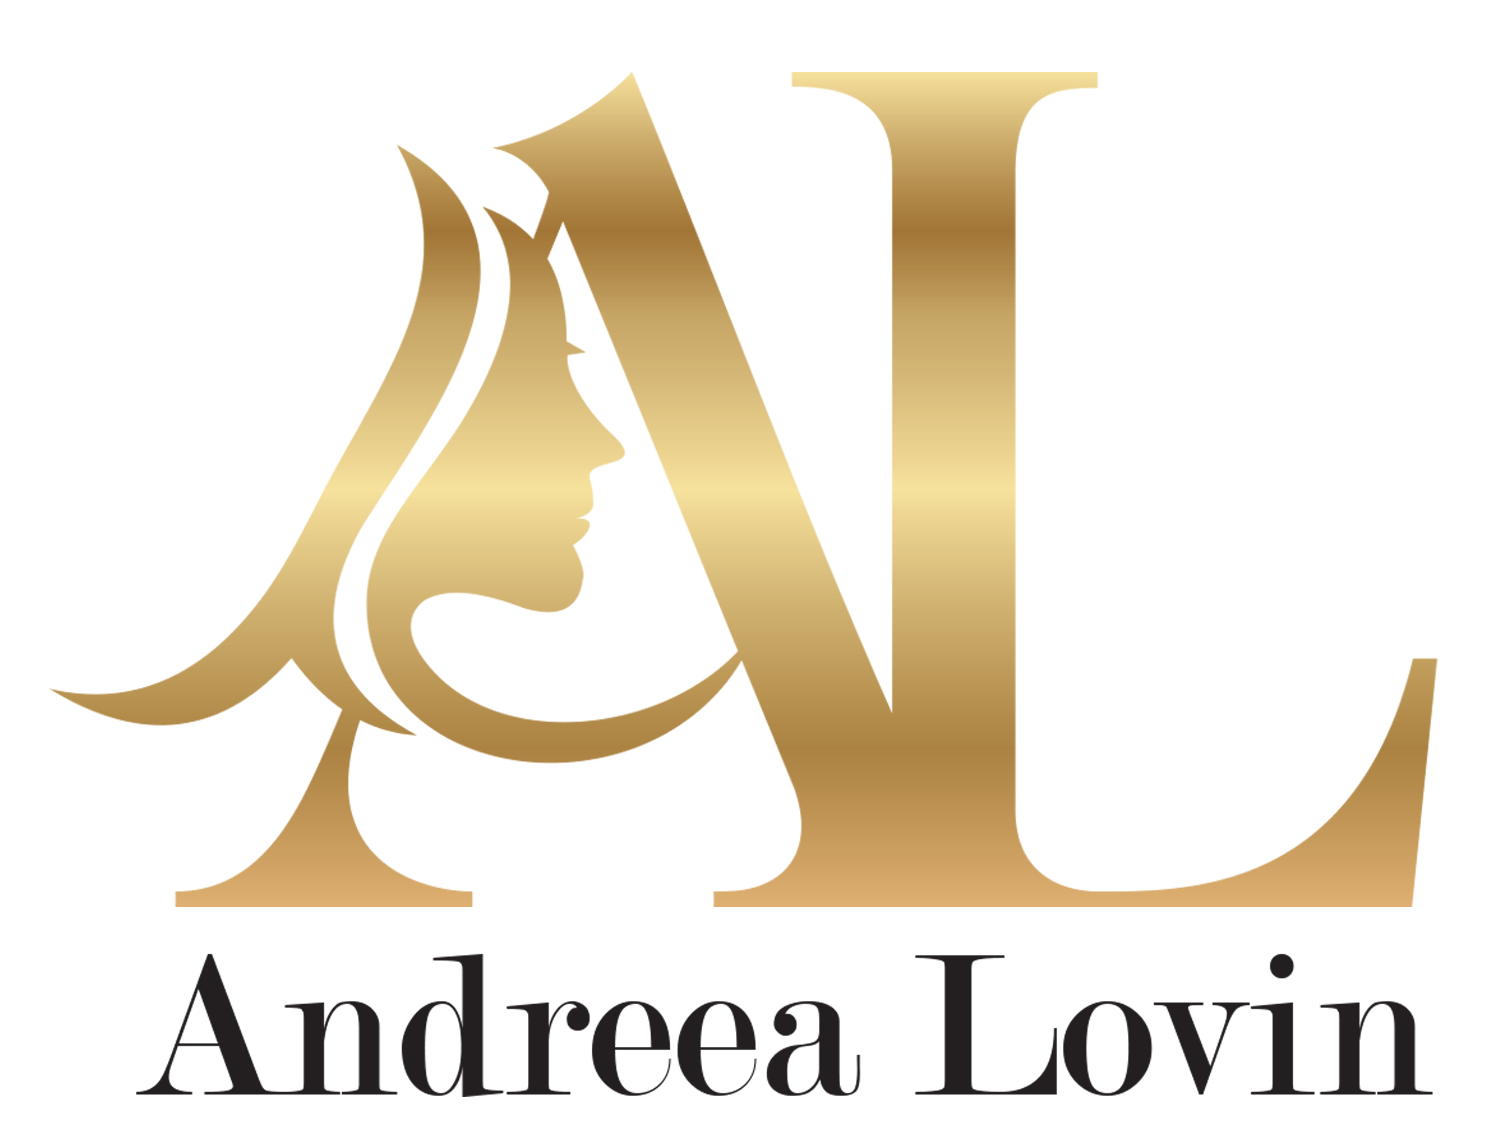 Contact – Andreea Lovin